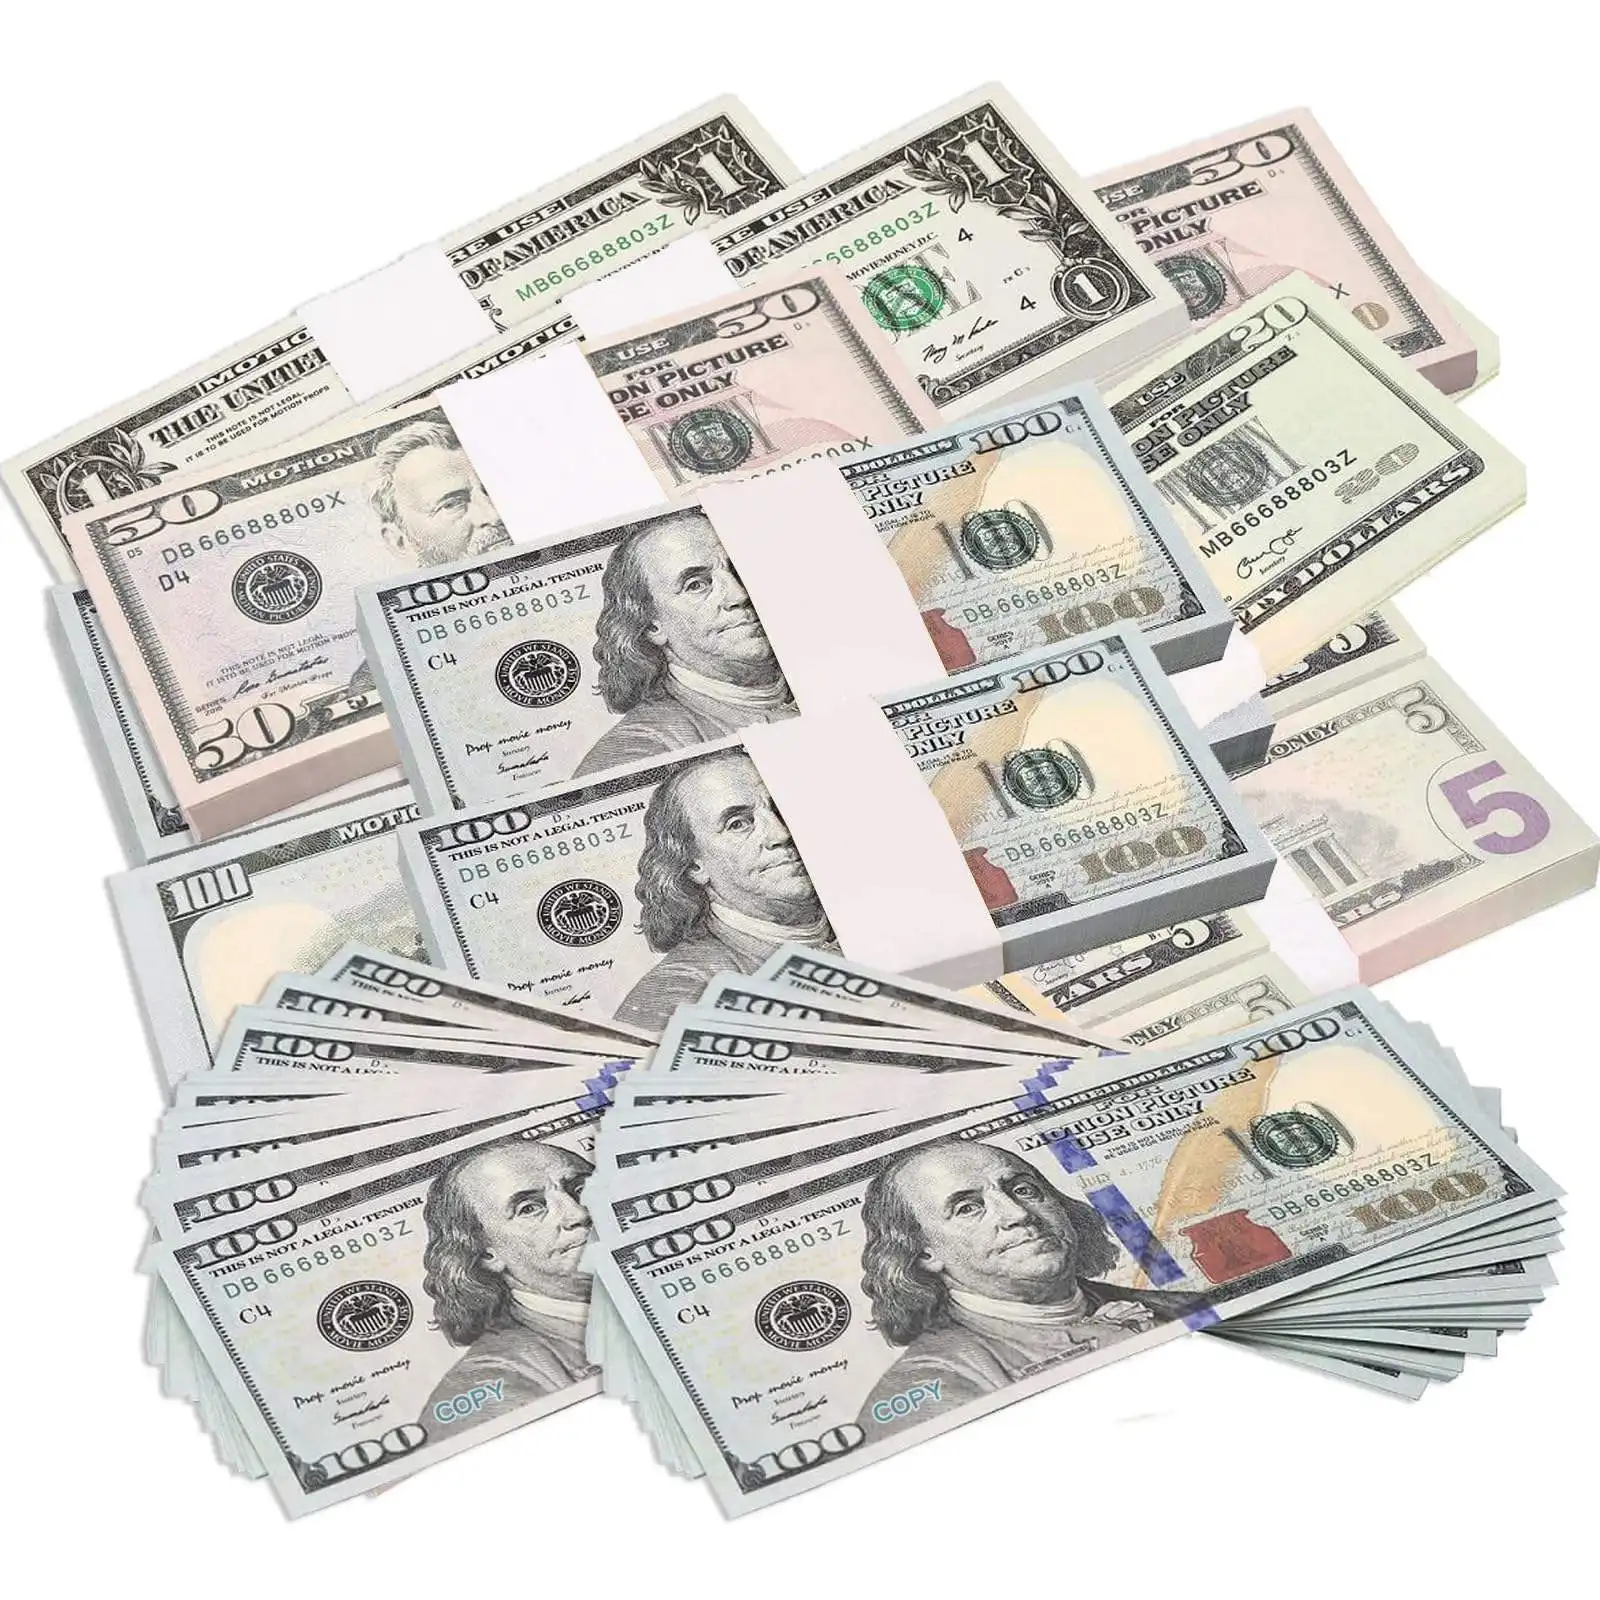 Kaliteli yeni tasarım 100 abd doları kağıt malzeme banknot Prop para baskılı dolar banknot mendil